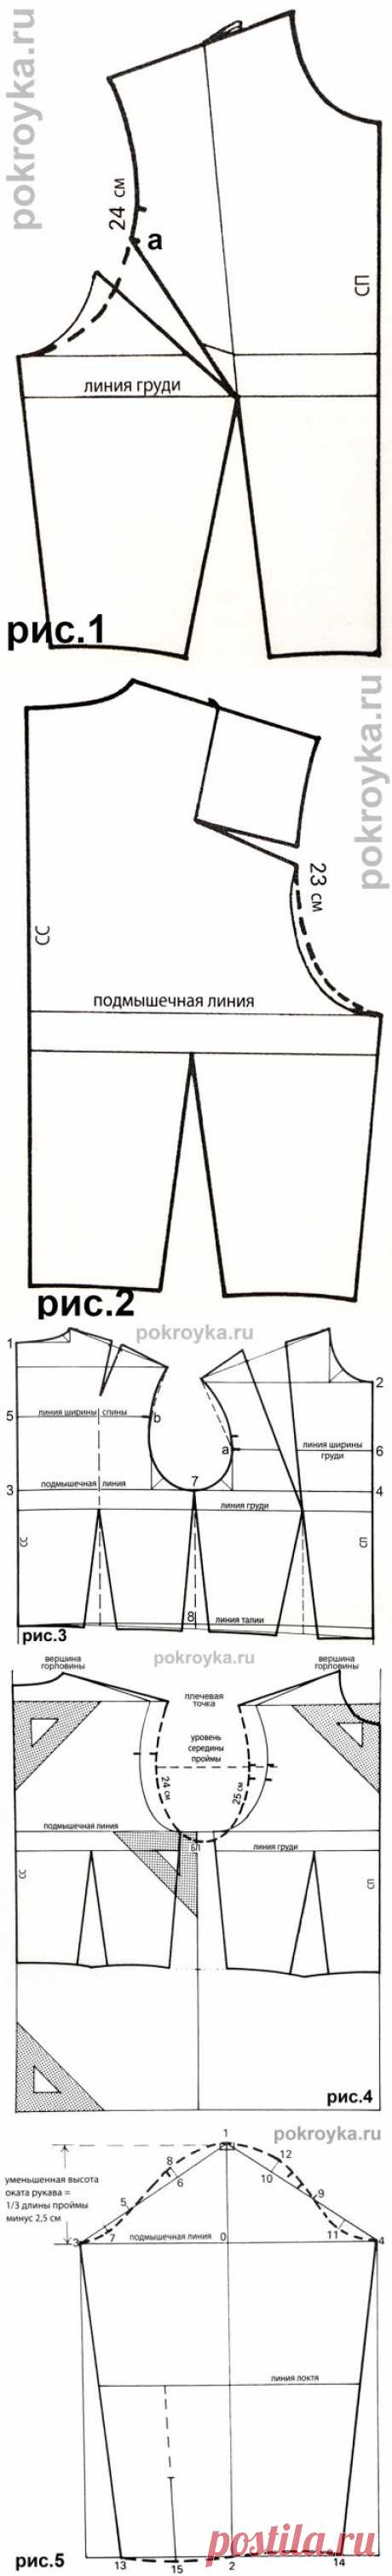 Выкройка лифа без вытачек свободной формы. Изготовление футболок | pokroyka.ru-уроки кроя и шитья